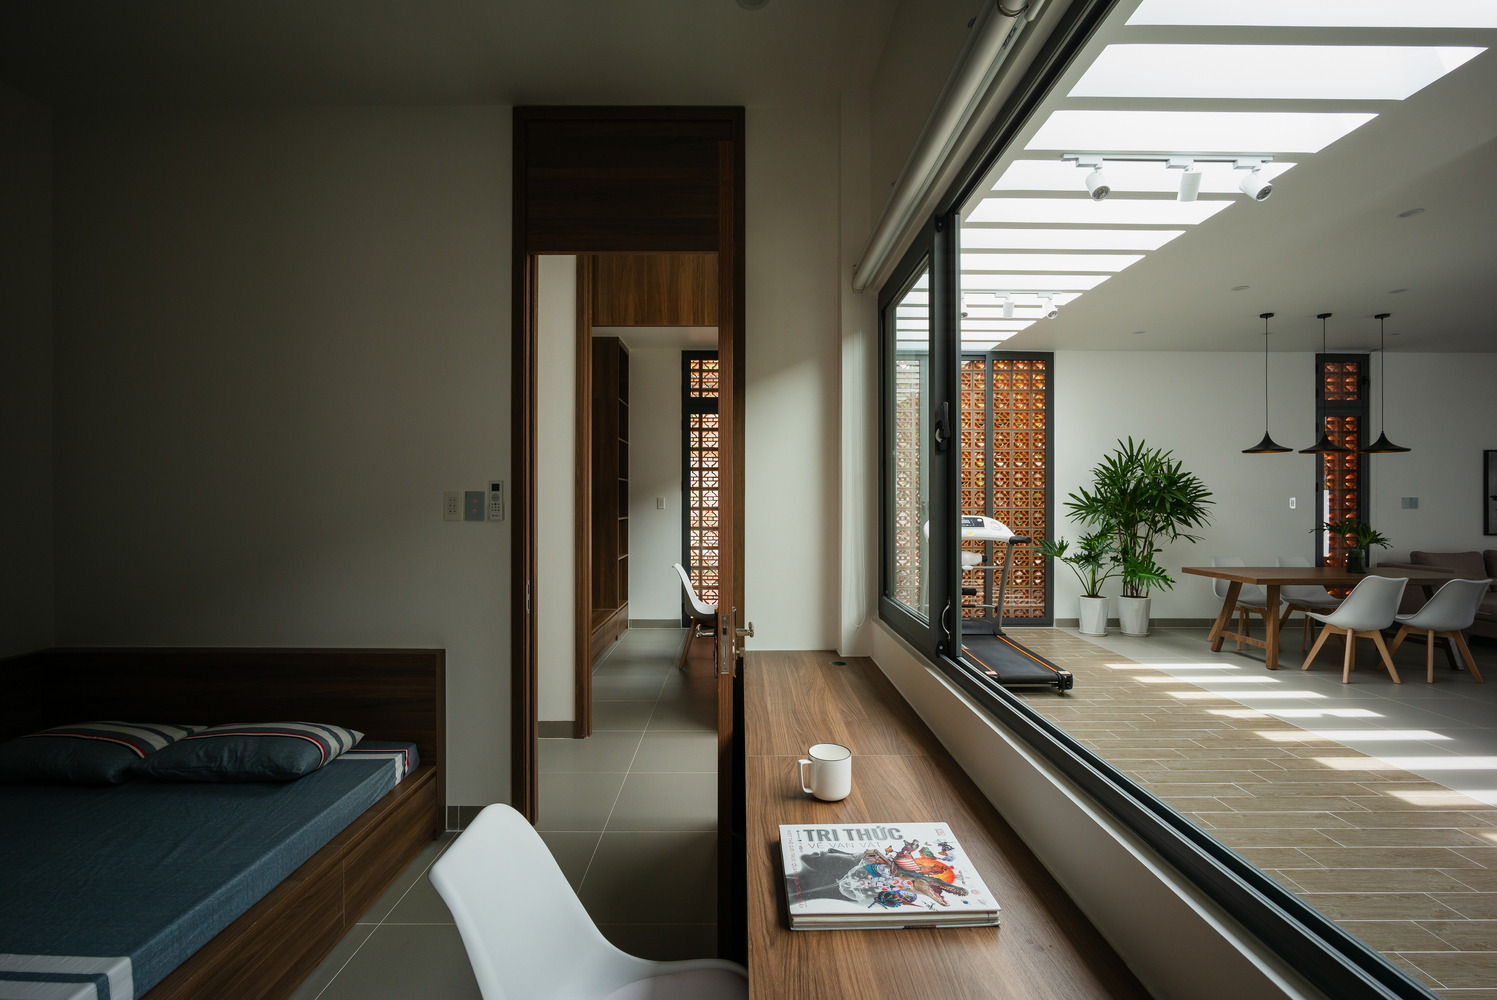 Phòng ngủ sử dụng cửa kính trượt trong suốt để có thể đón nhận ánh sáng từ không gian sinh hoạt chung và tạo cảm giác ngôi nhà thoáng đãng hơn.